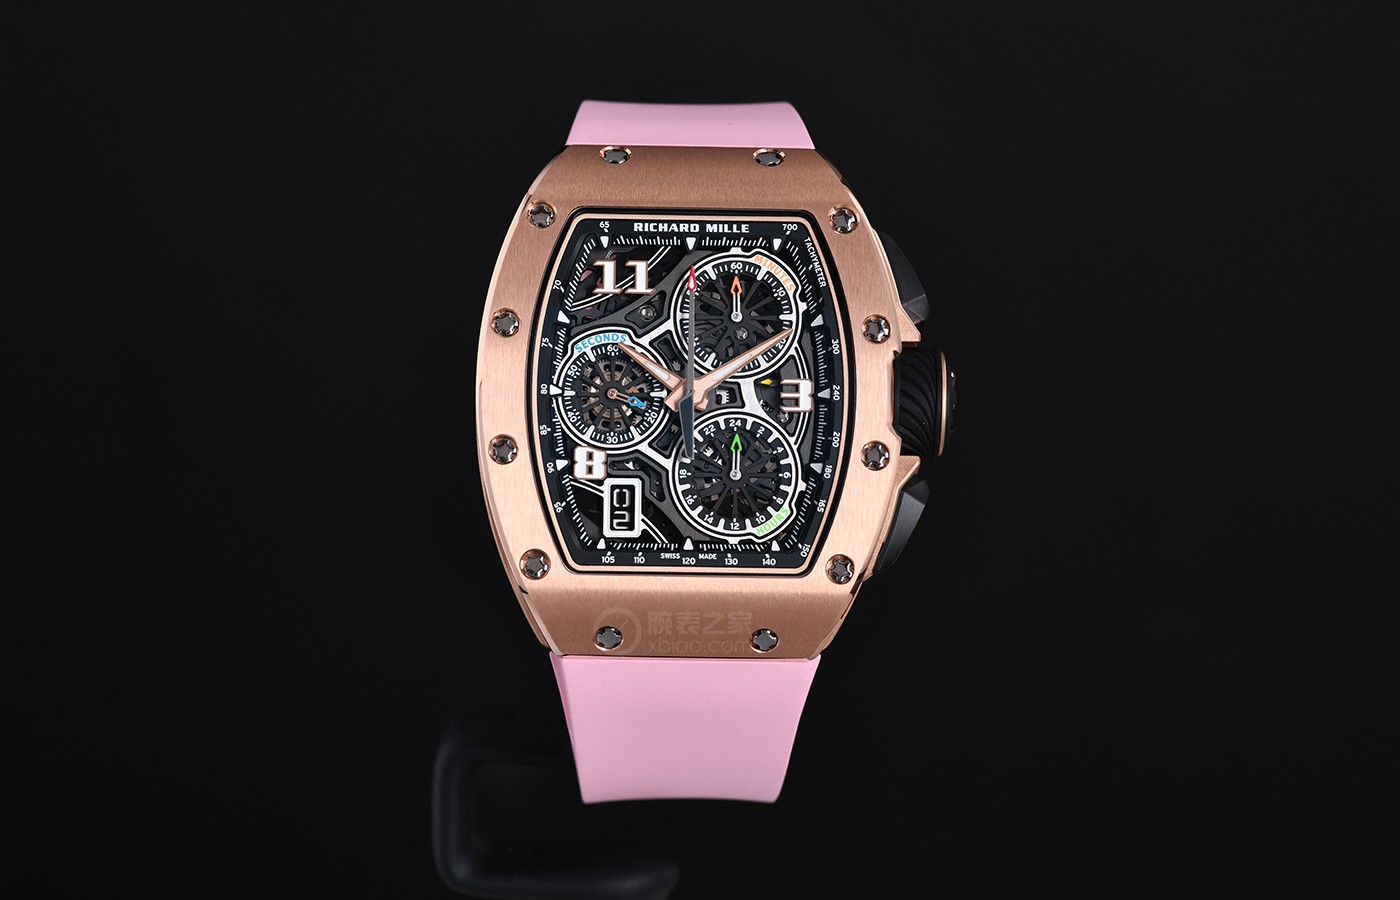 里查德米尔RM 72-01计时码表 来自高级腕表的粉色少女心